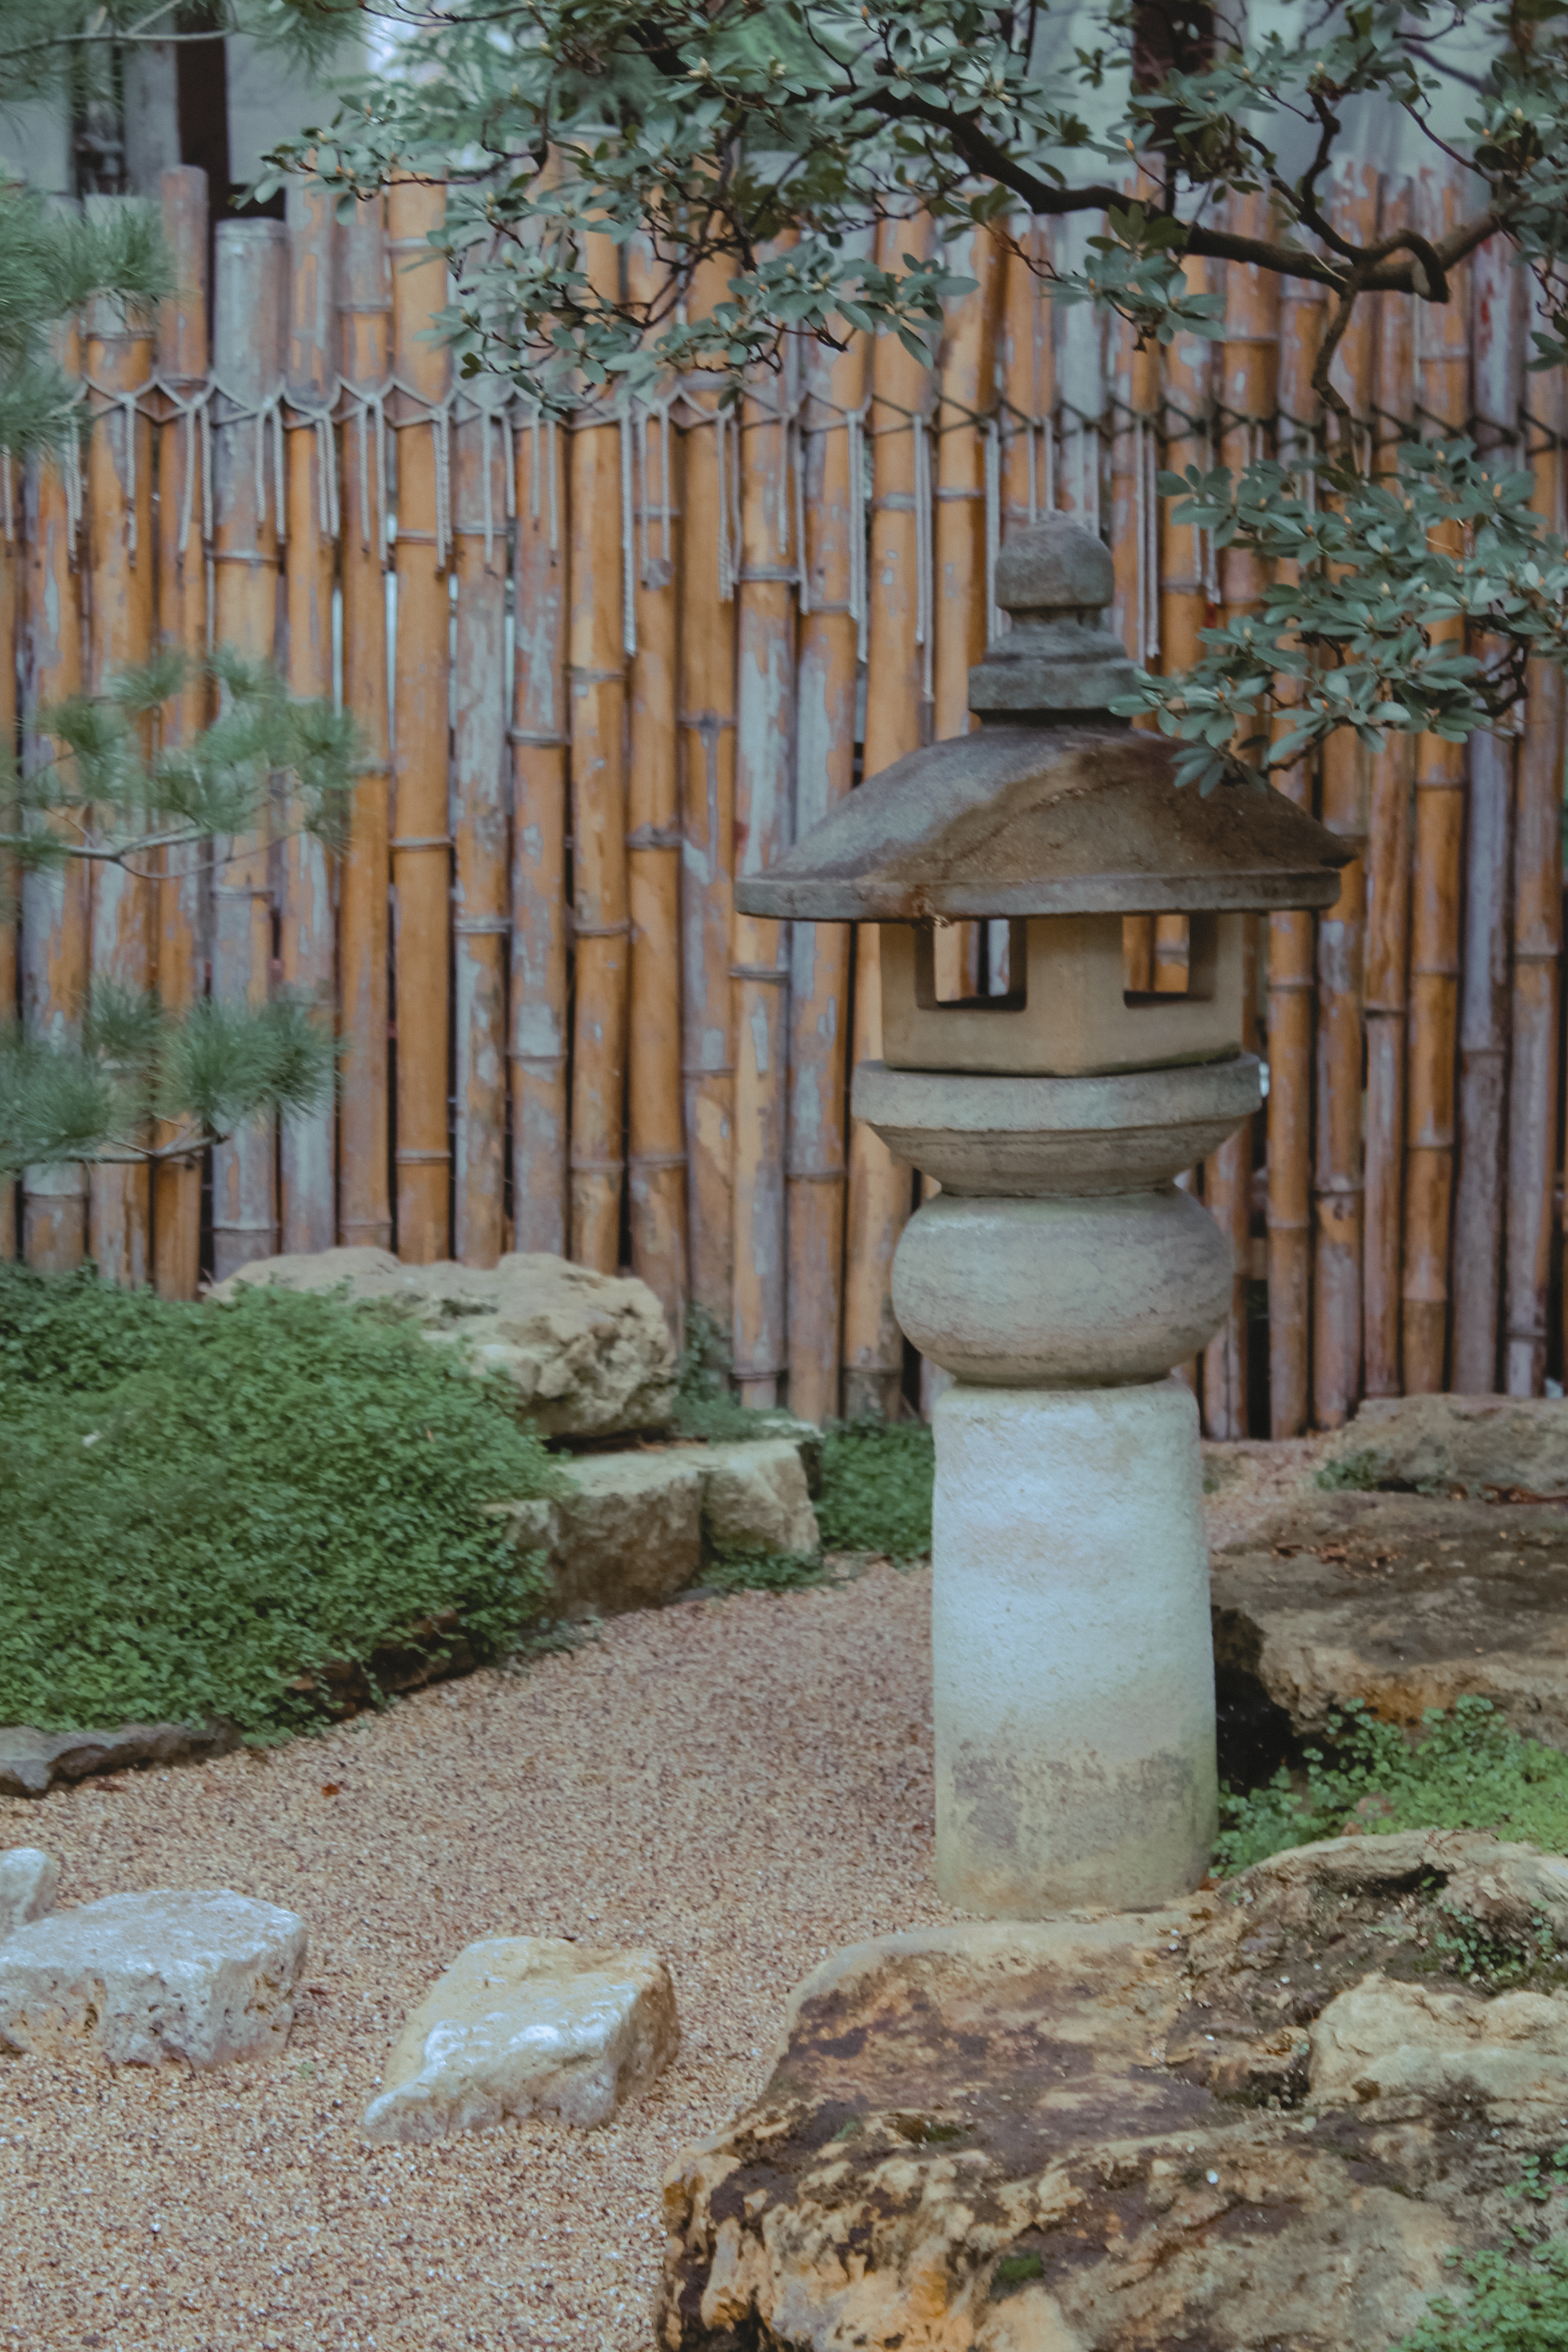 A mini Zen garden with bamboo fencing